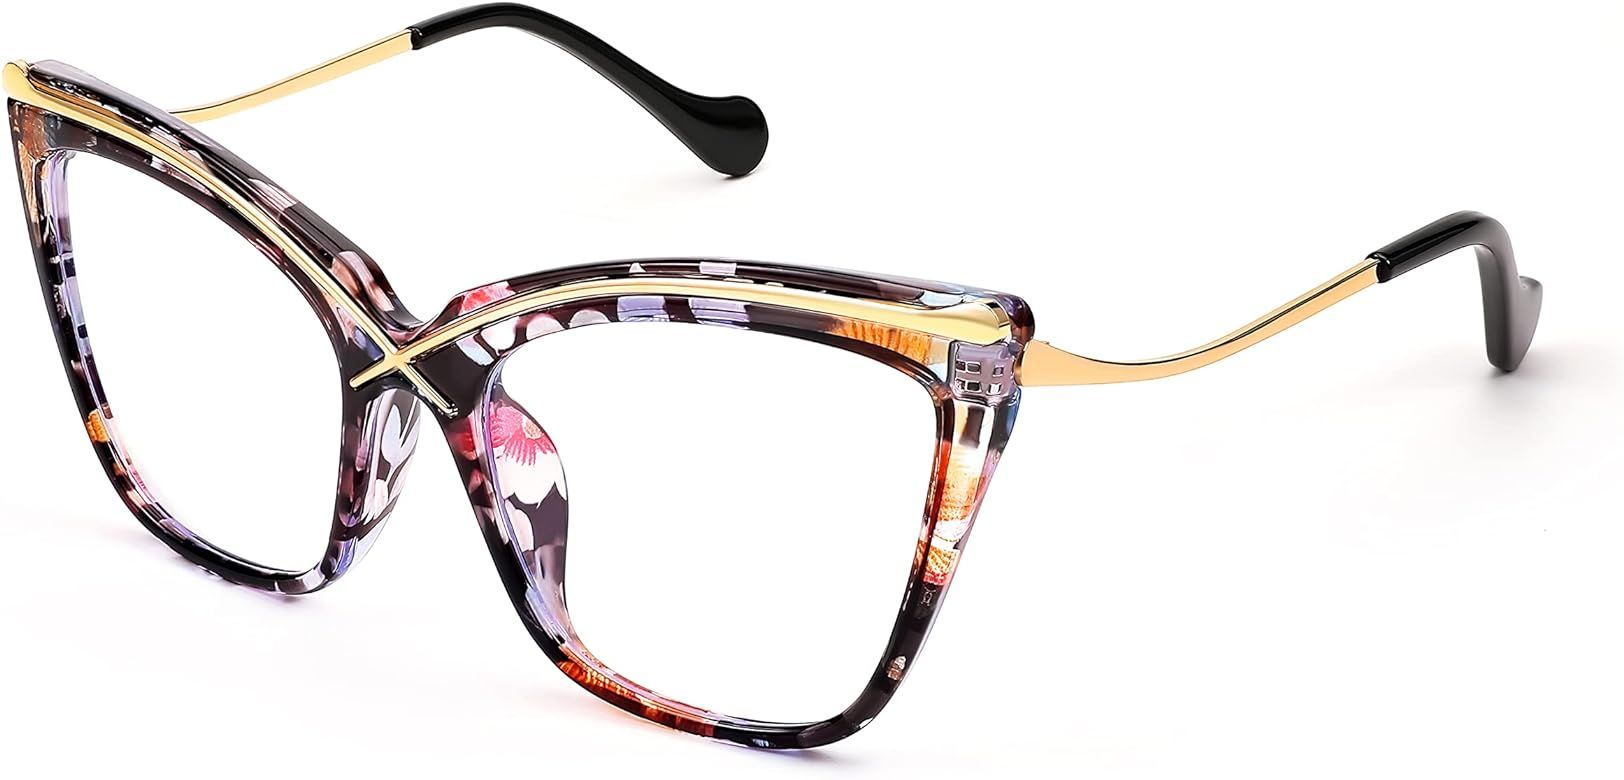 FEISEDY Women Oversized Square Blue Light Blocking Glasses Anti Eyestrain Cat Eye Fashion Eyewear... | Amazon (US)